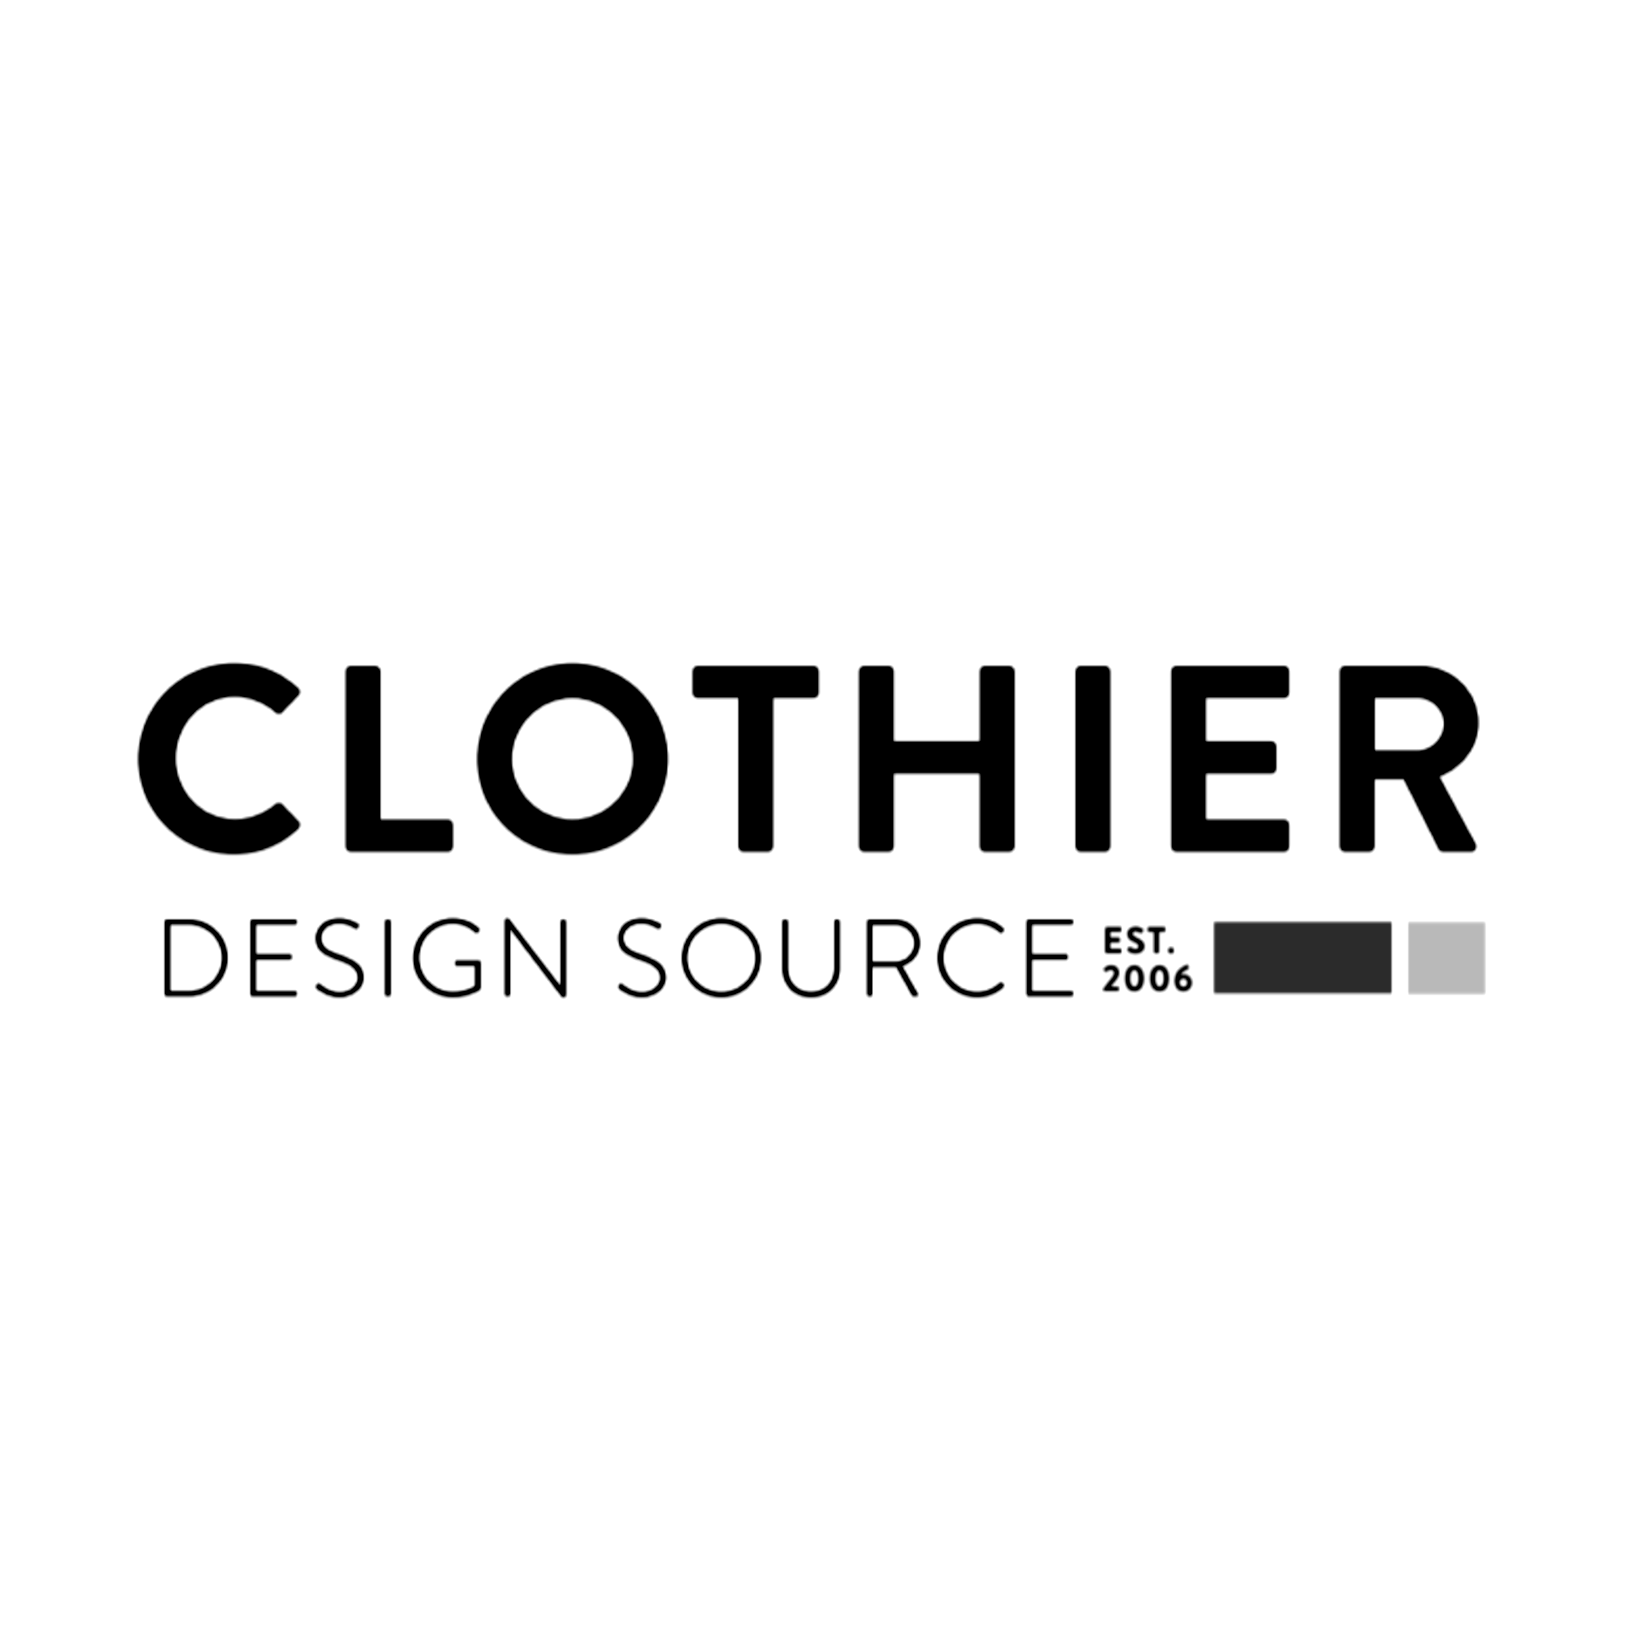 Clothier Design Source Sq.png